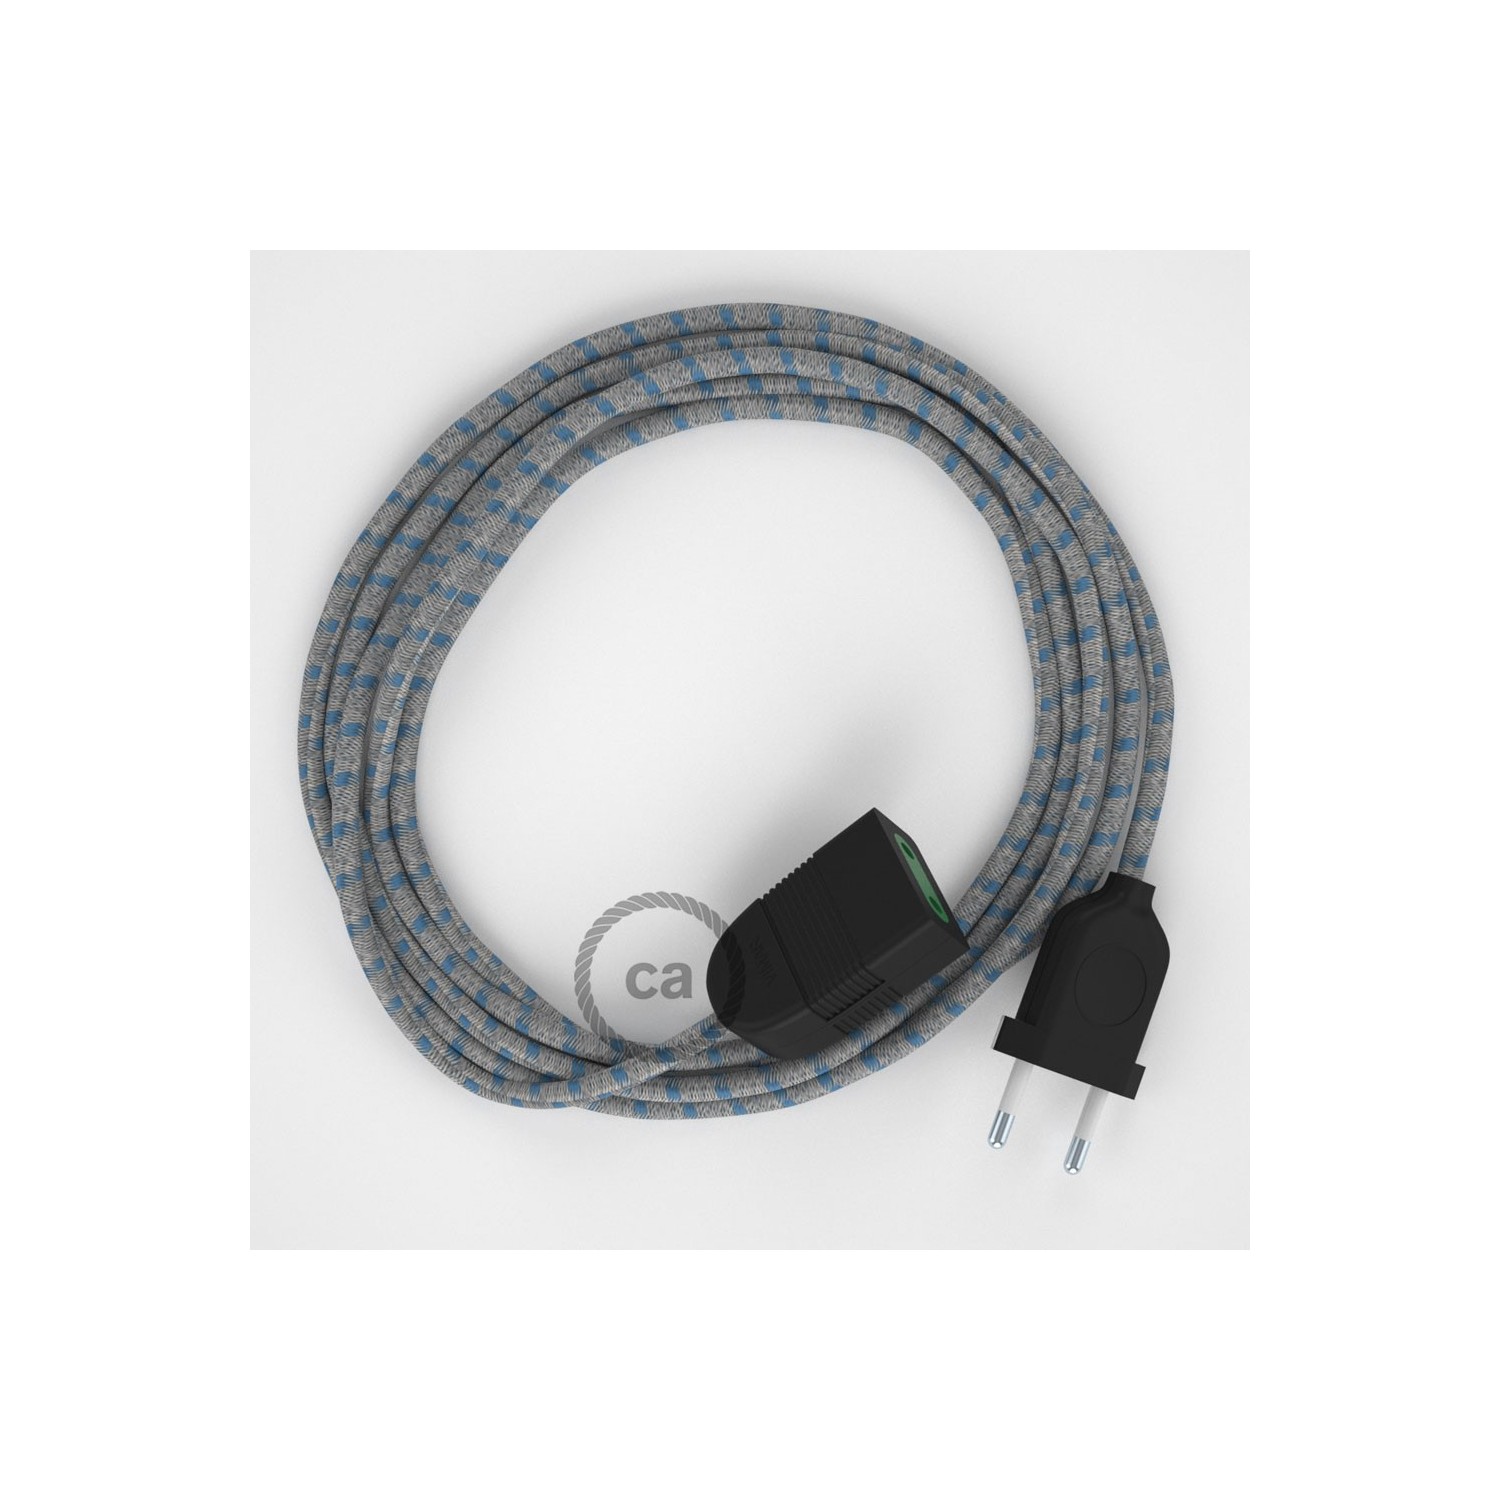 Pruhovaný modrý bavlněně - lněný RD55 2P 10A textilní prodlužovací elektrický kabel. Vyrobený v Itálii.